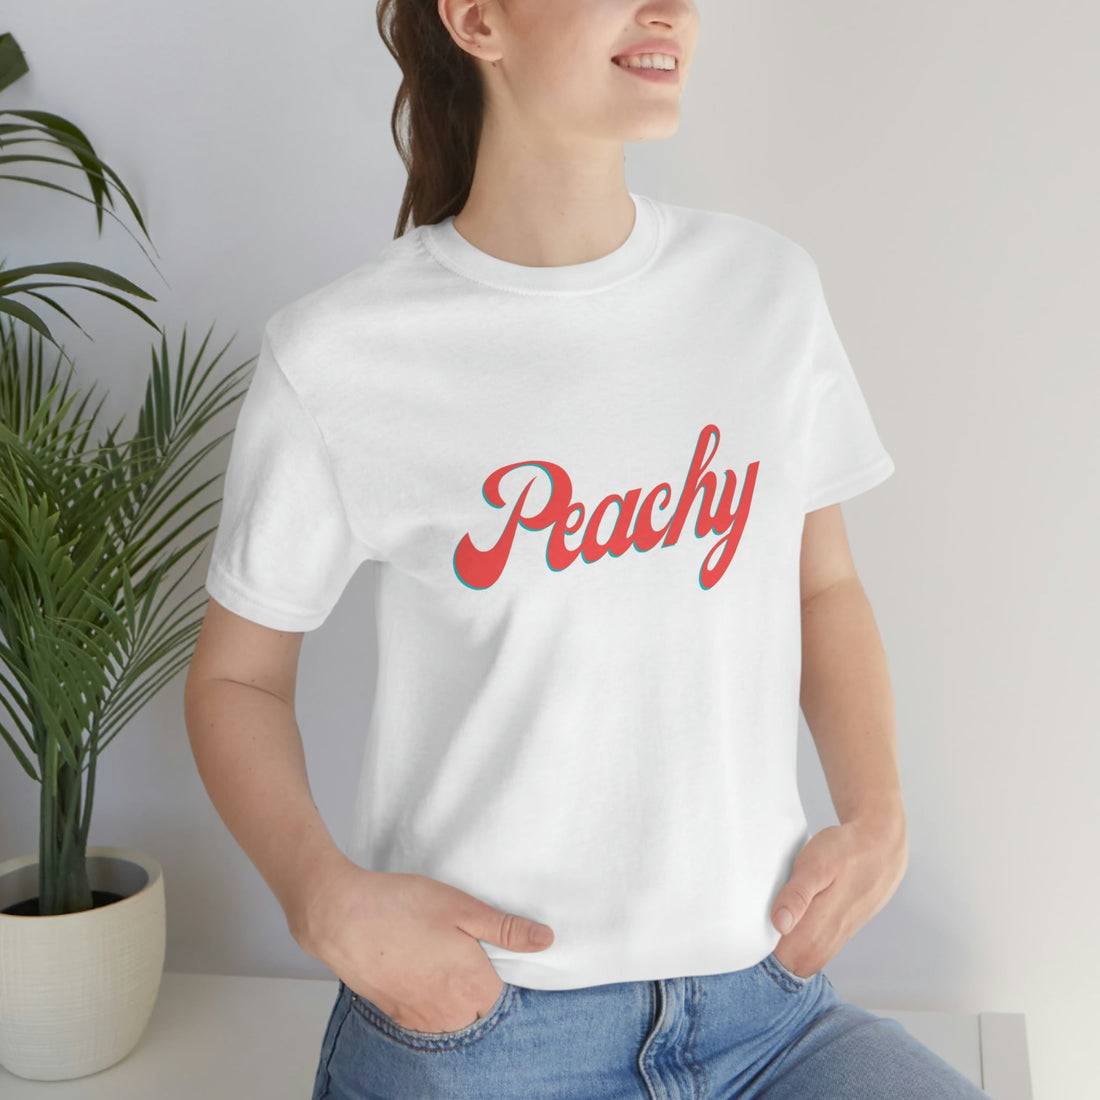 Peachy - T-Shirt - Positively Sassy - Peachy